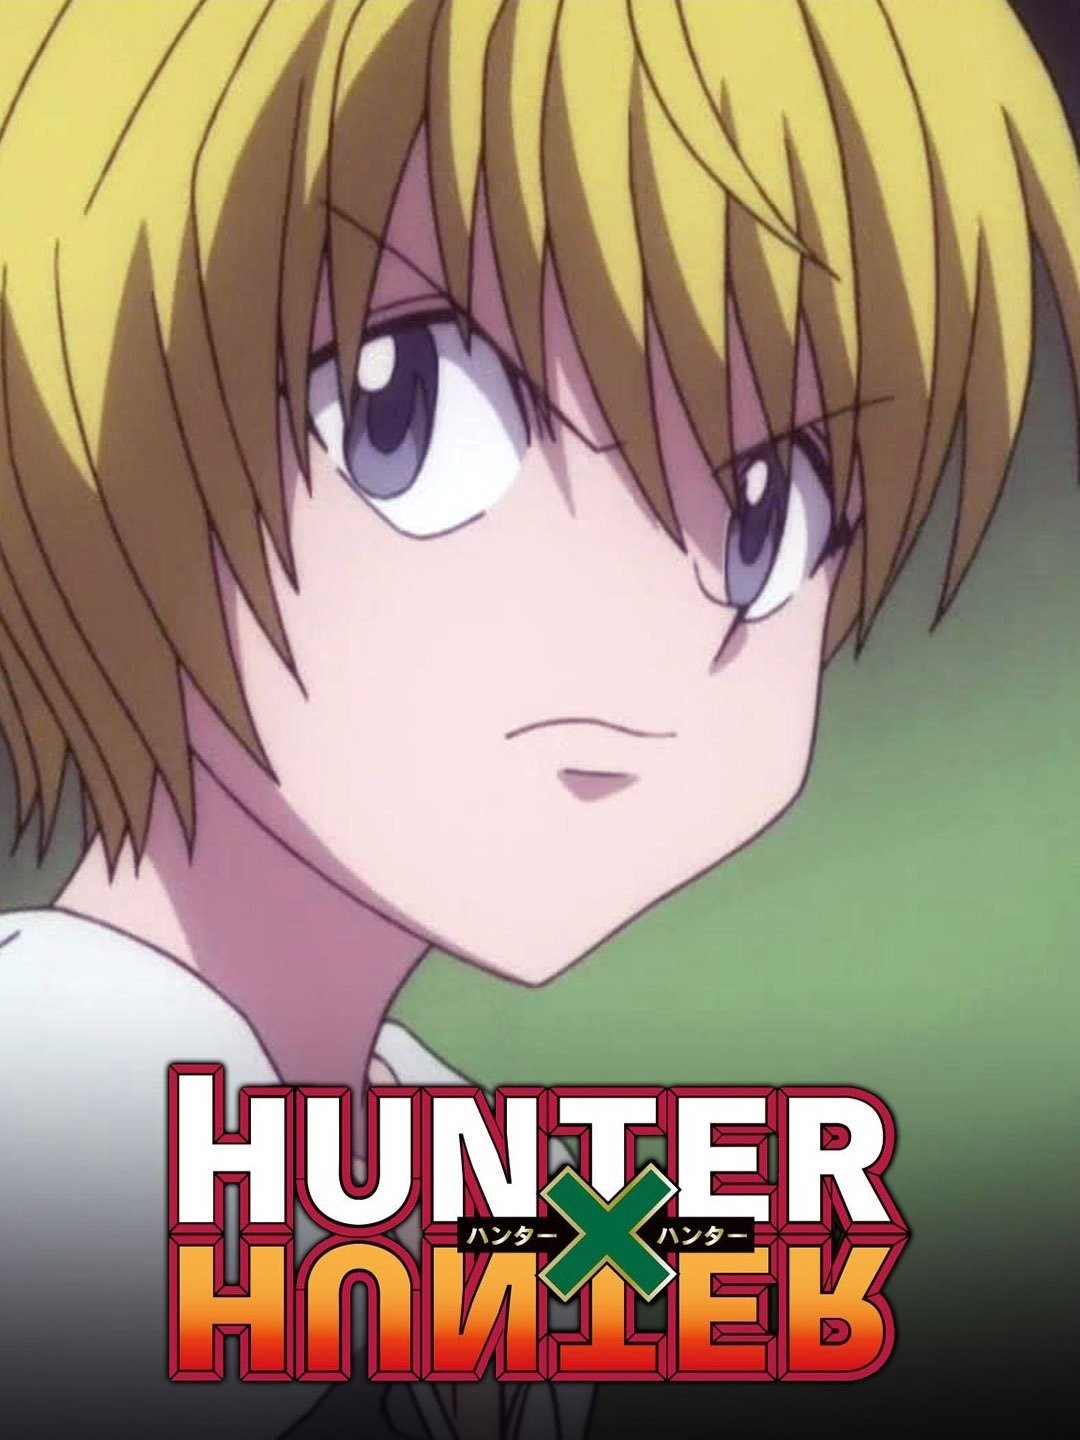 Watch Hunter x Hunter (2011) episodes online